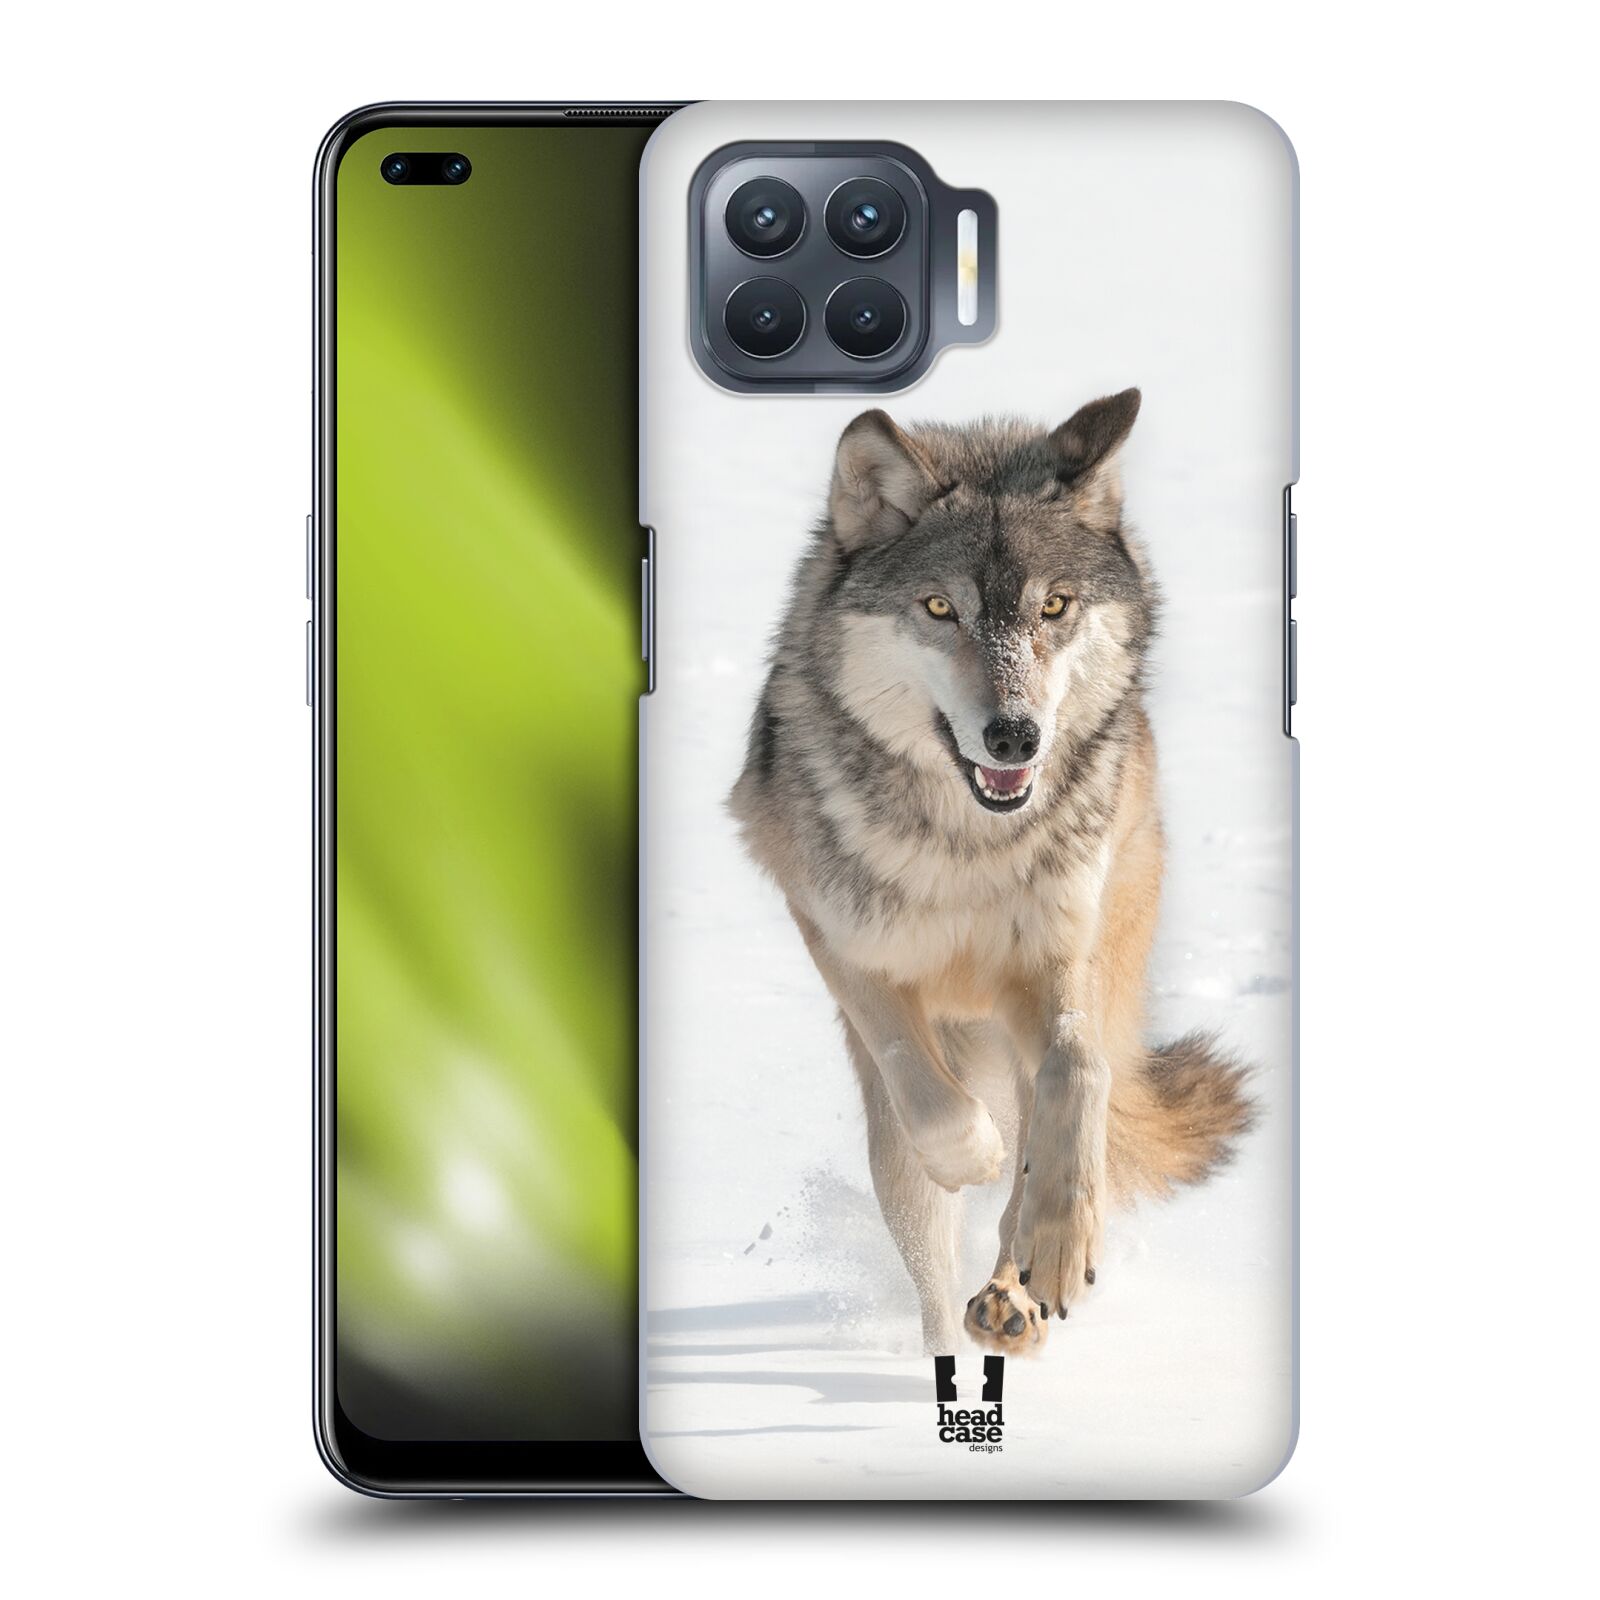 Zadní obal pro mobil Oppo Reno 4 LITE - HEAD CASE - Svět zvířat divoký vlk